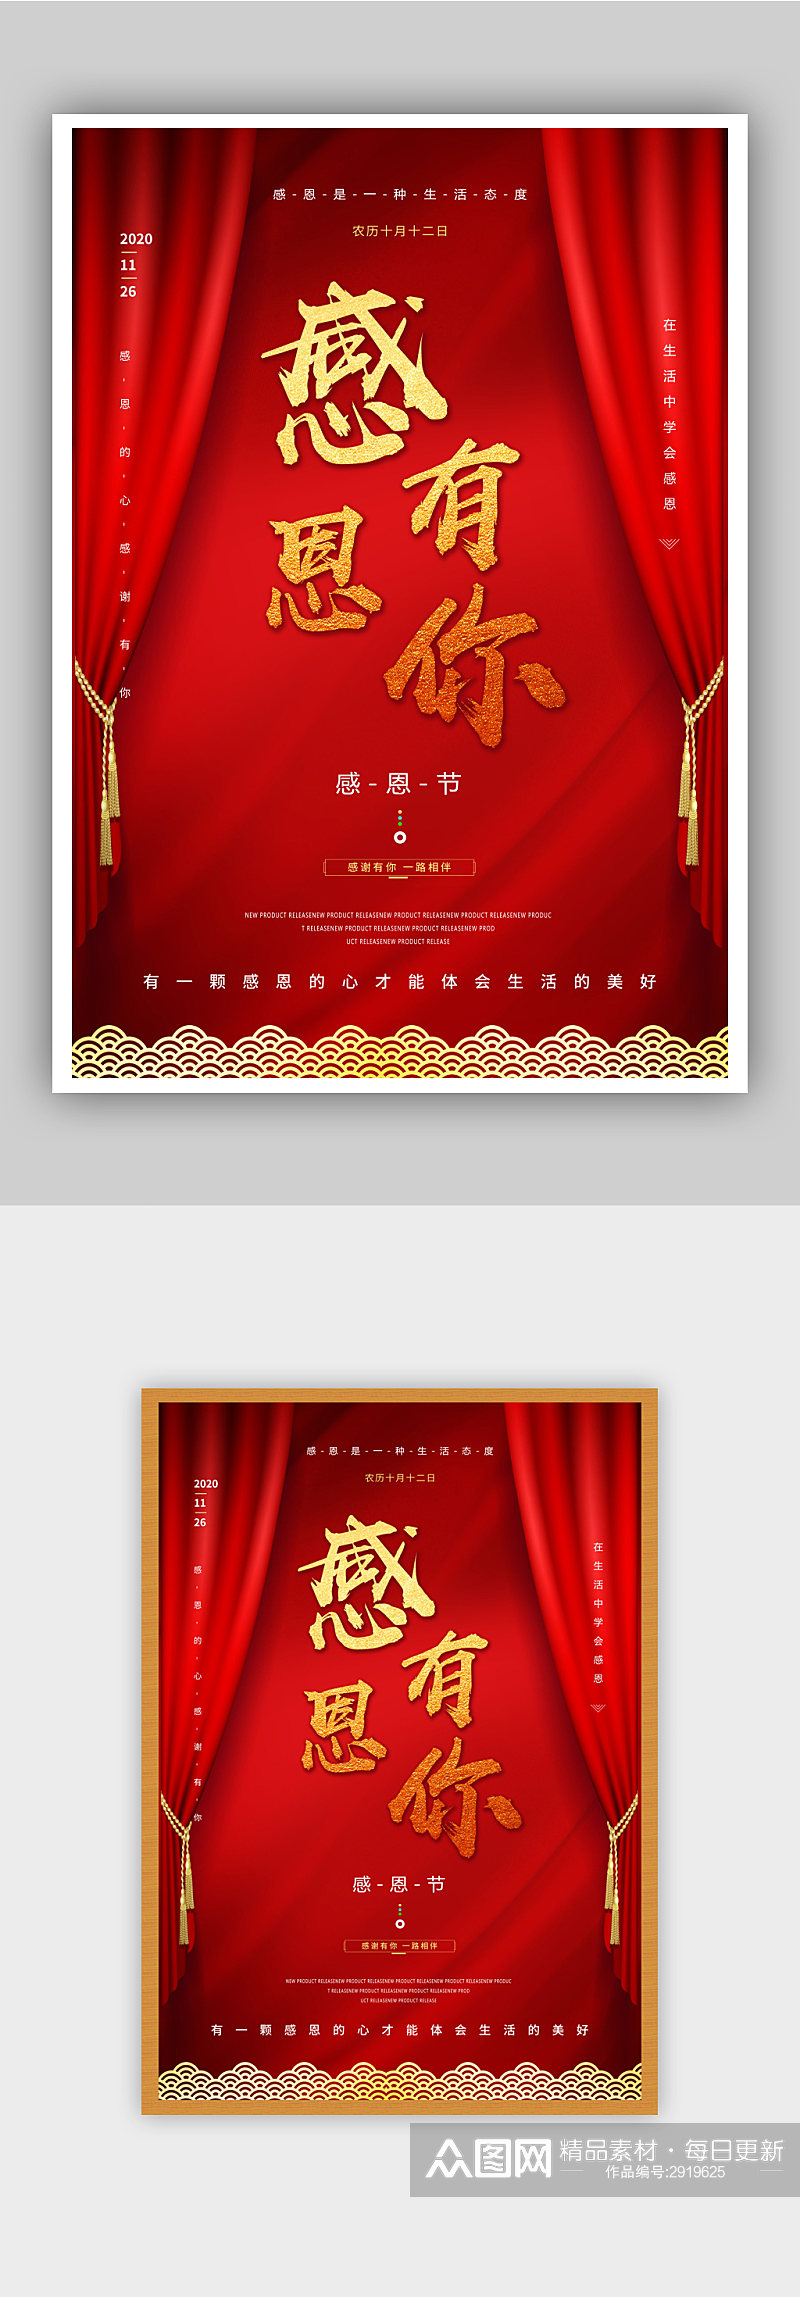 红色中式感恩节海报素材